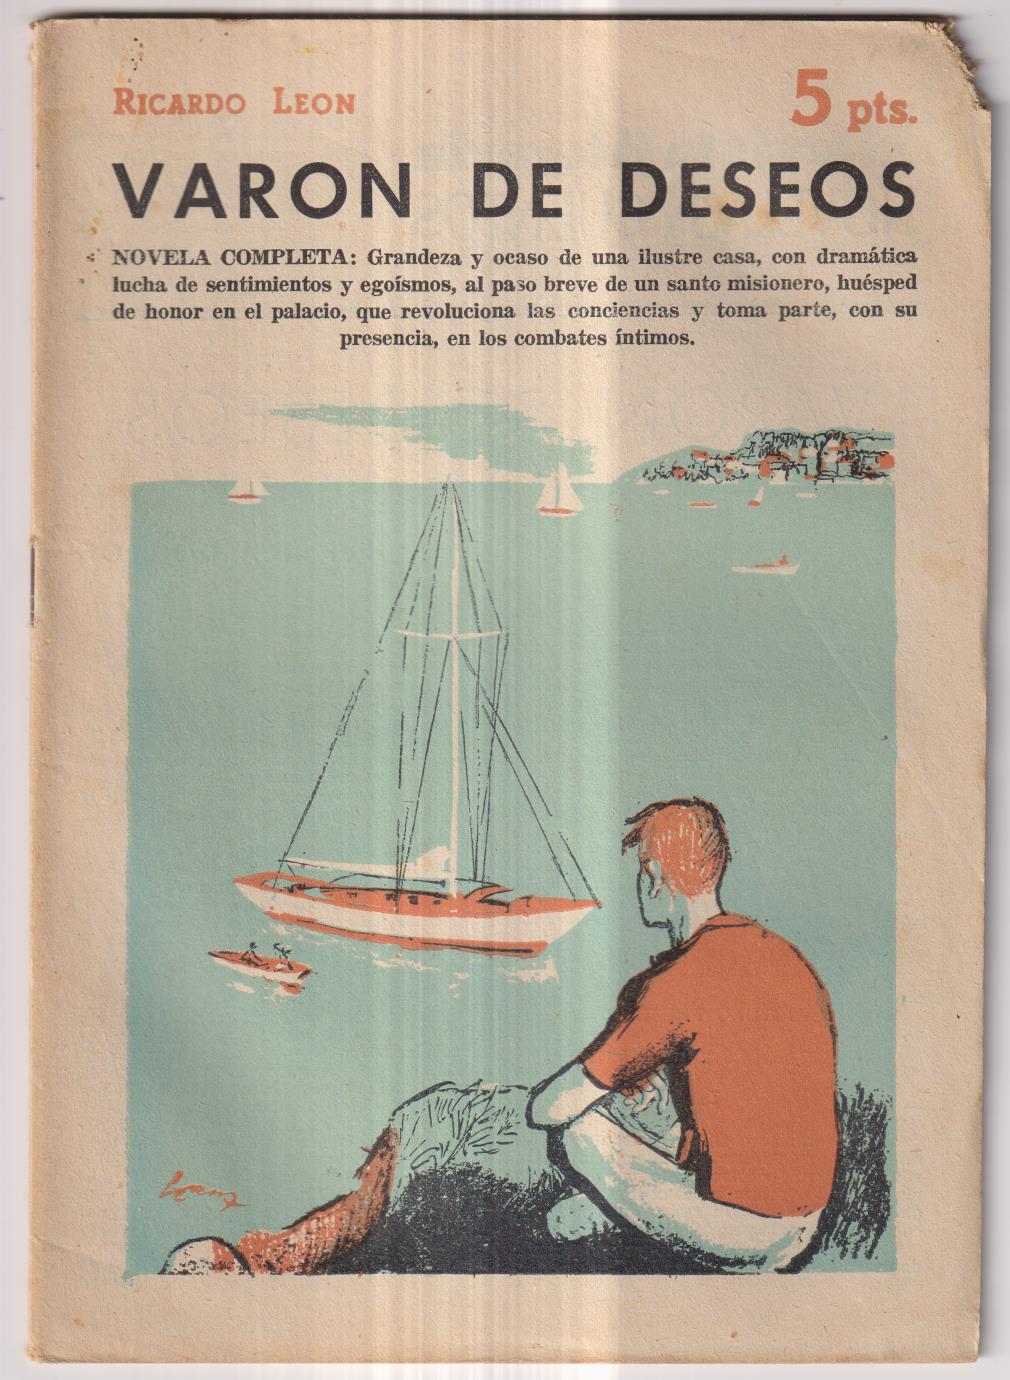 Revista Literaria Novelas y Cuentos nº 1398. Ricardo león. Varón de Deseos, año 1958